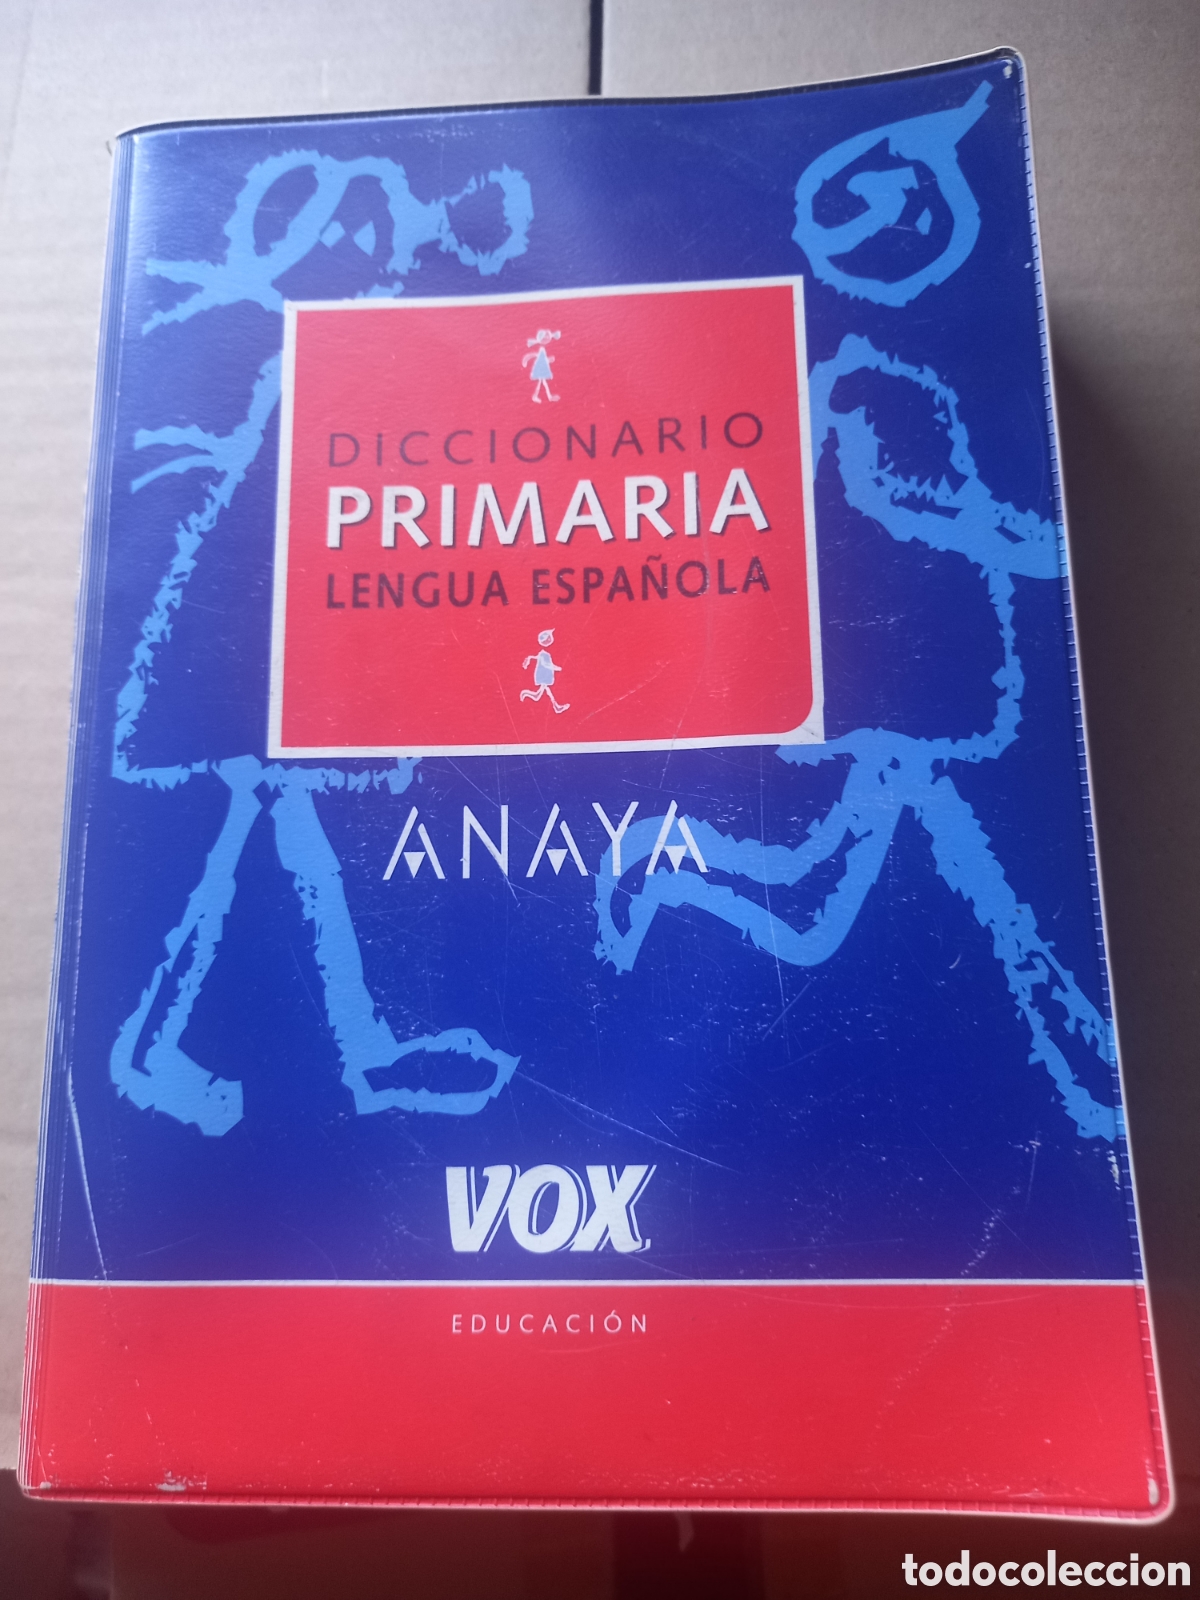 diccionario primaria de lengua española - Compra venta en todocoleccion